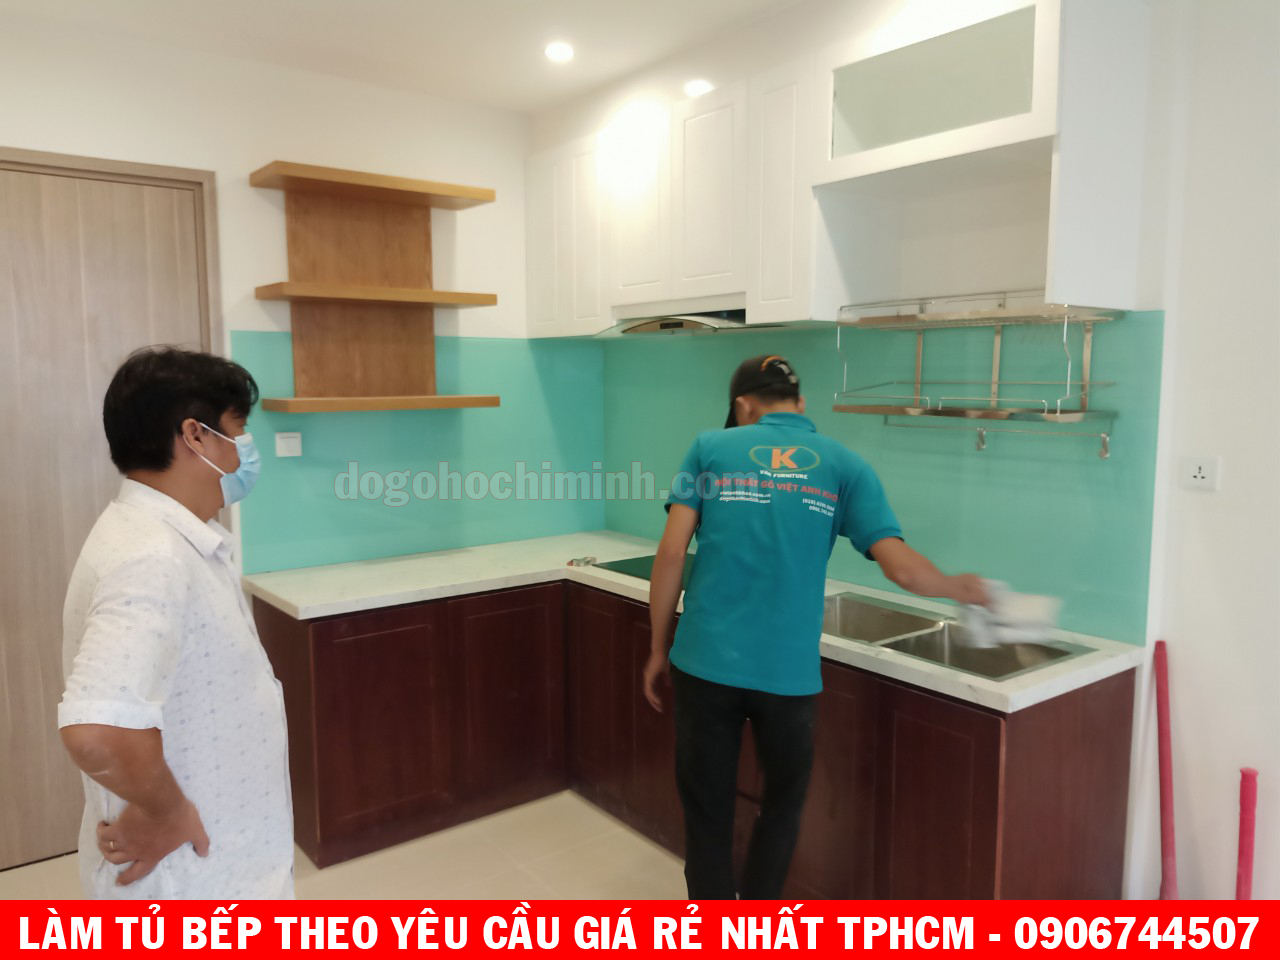 Làm tủ bếp theo yêu cầu tại chung cư VINHOME A Lộc Q9 TPHCM 2020